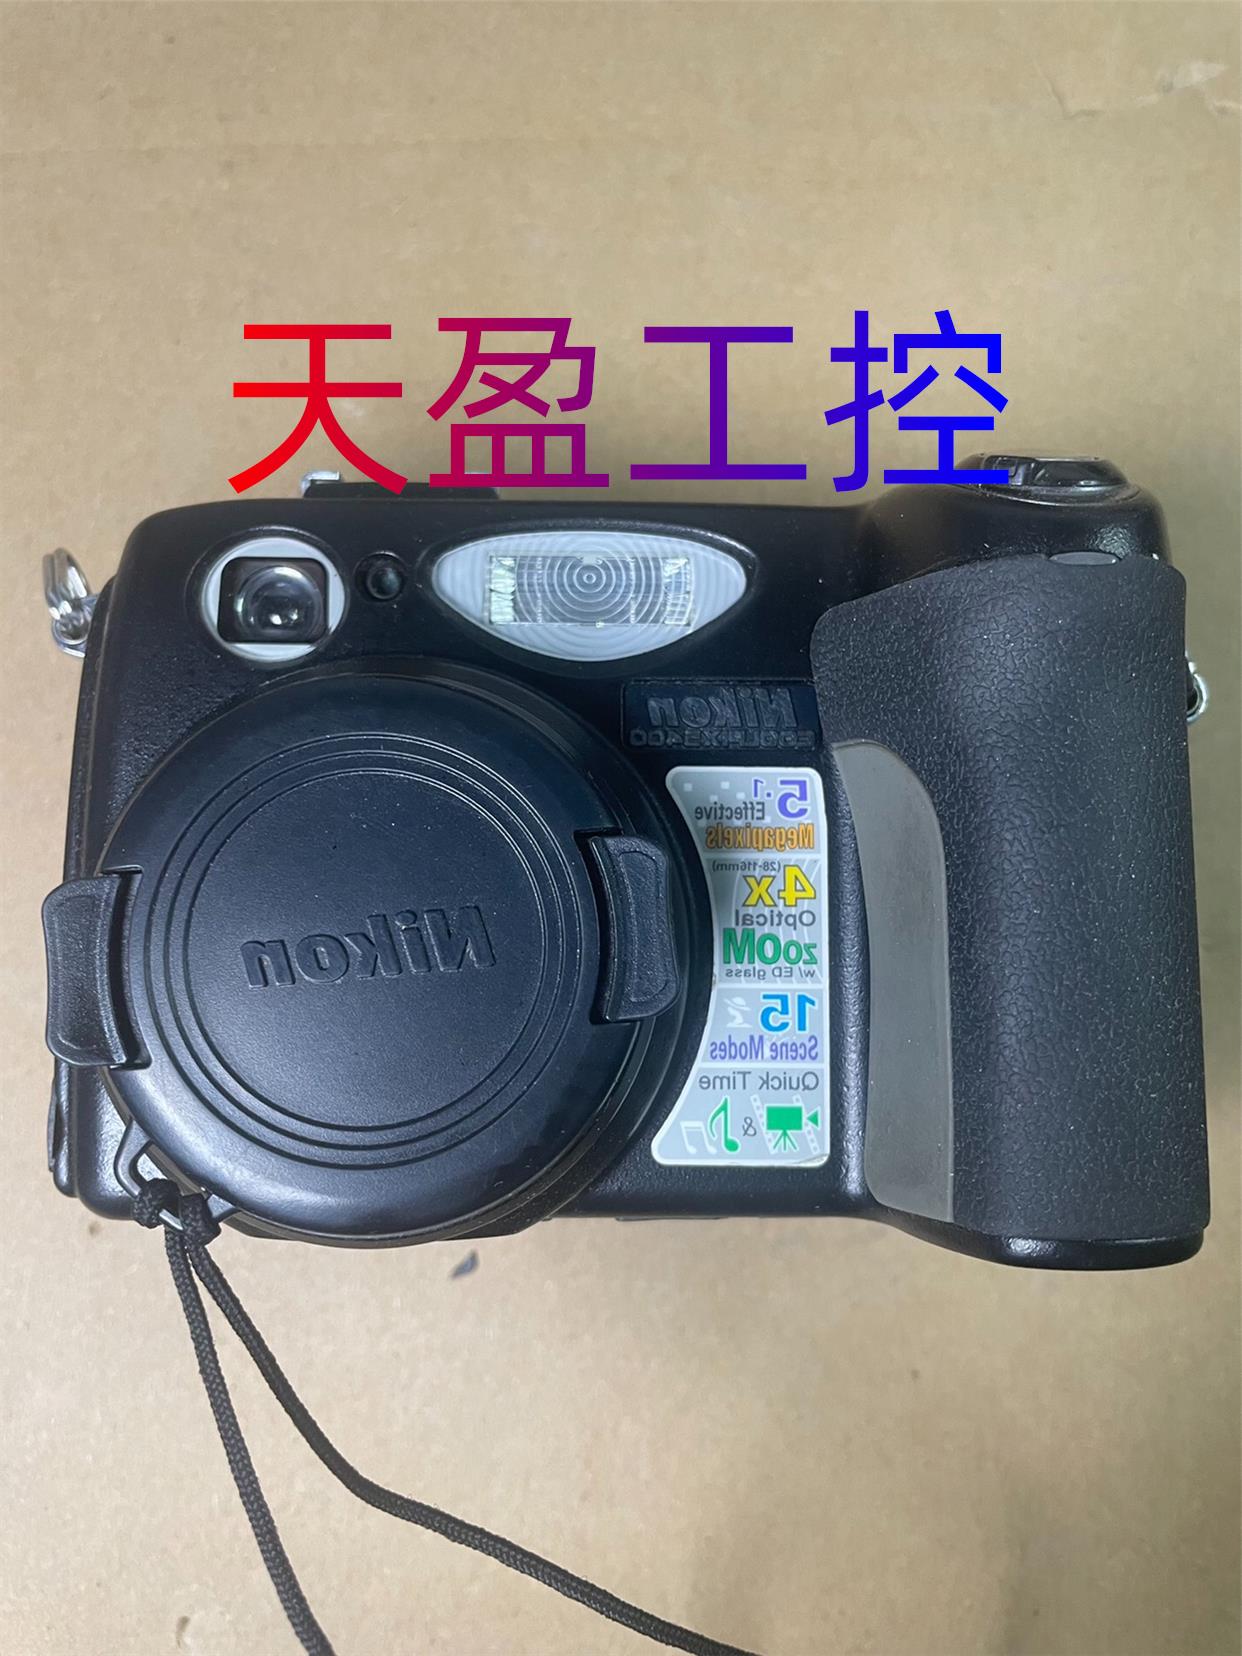 尼康E5400数码相机故障机，通电开机正常拍照黑屏不显示画面询价